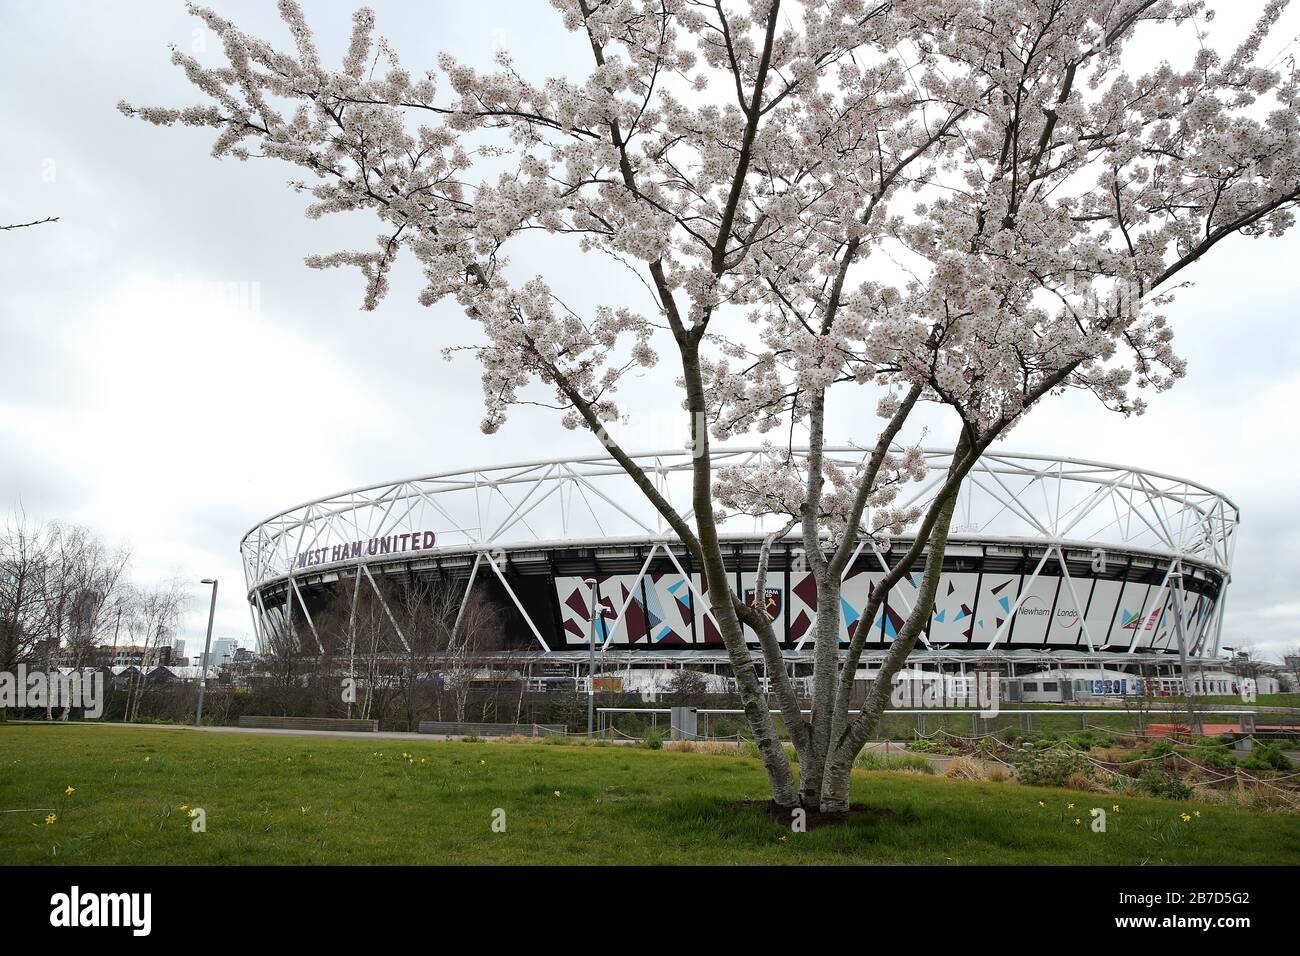 Vue sur un arbre recouvert de fleurs à l'extérieur du stade de Londres, stade du West Ham United Football Club, suite à l'annonce de vendredi que la Premier League a suspendu tous les matches jusqu'au samedi 4 avril 2020. Banque D'Images